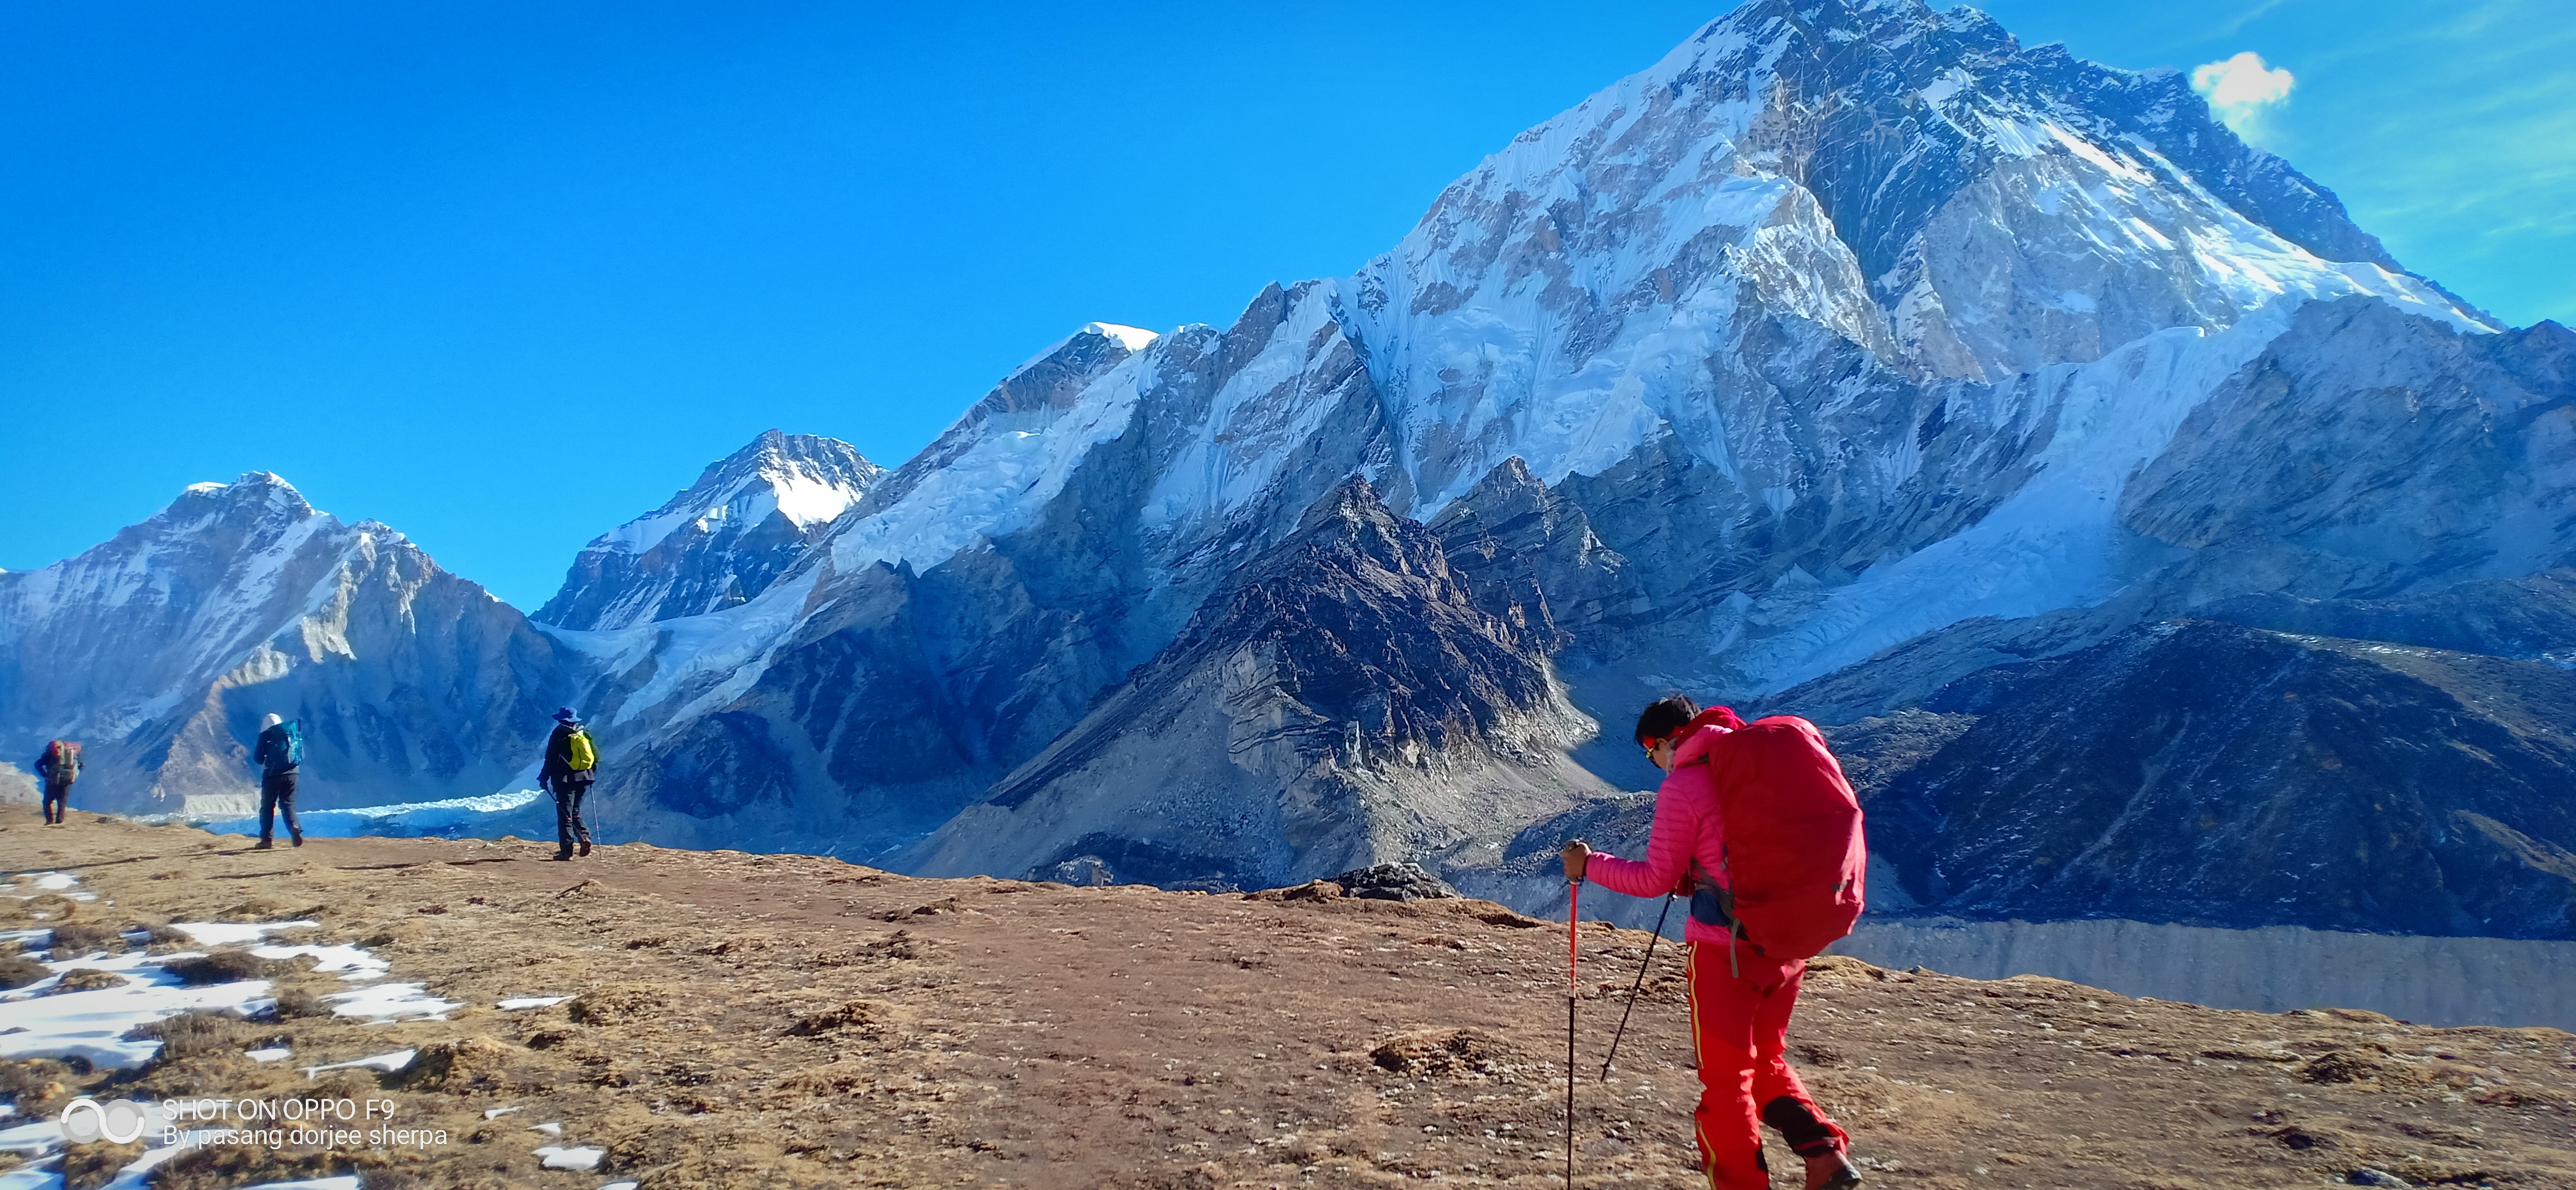 Everest Base Camp-Gokyo Trek (Chola Pass Trek)